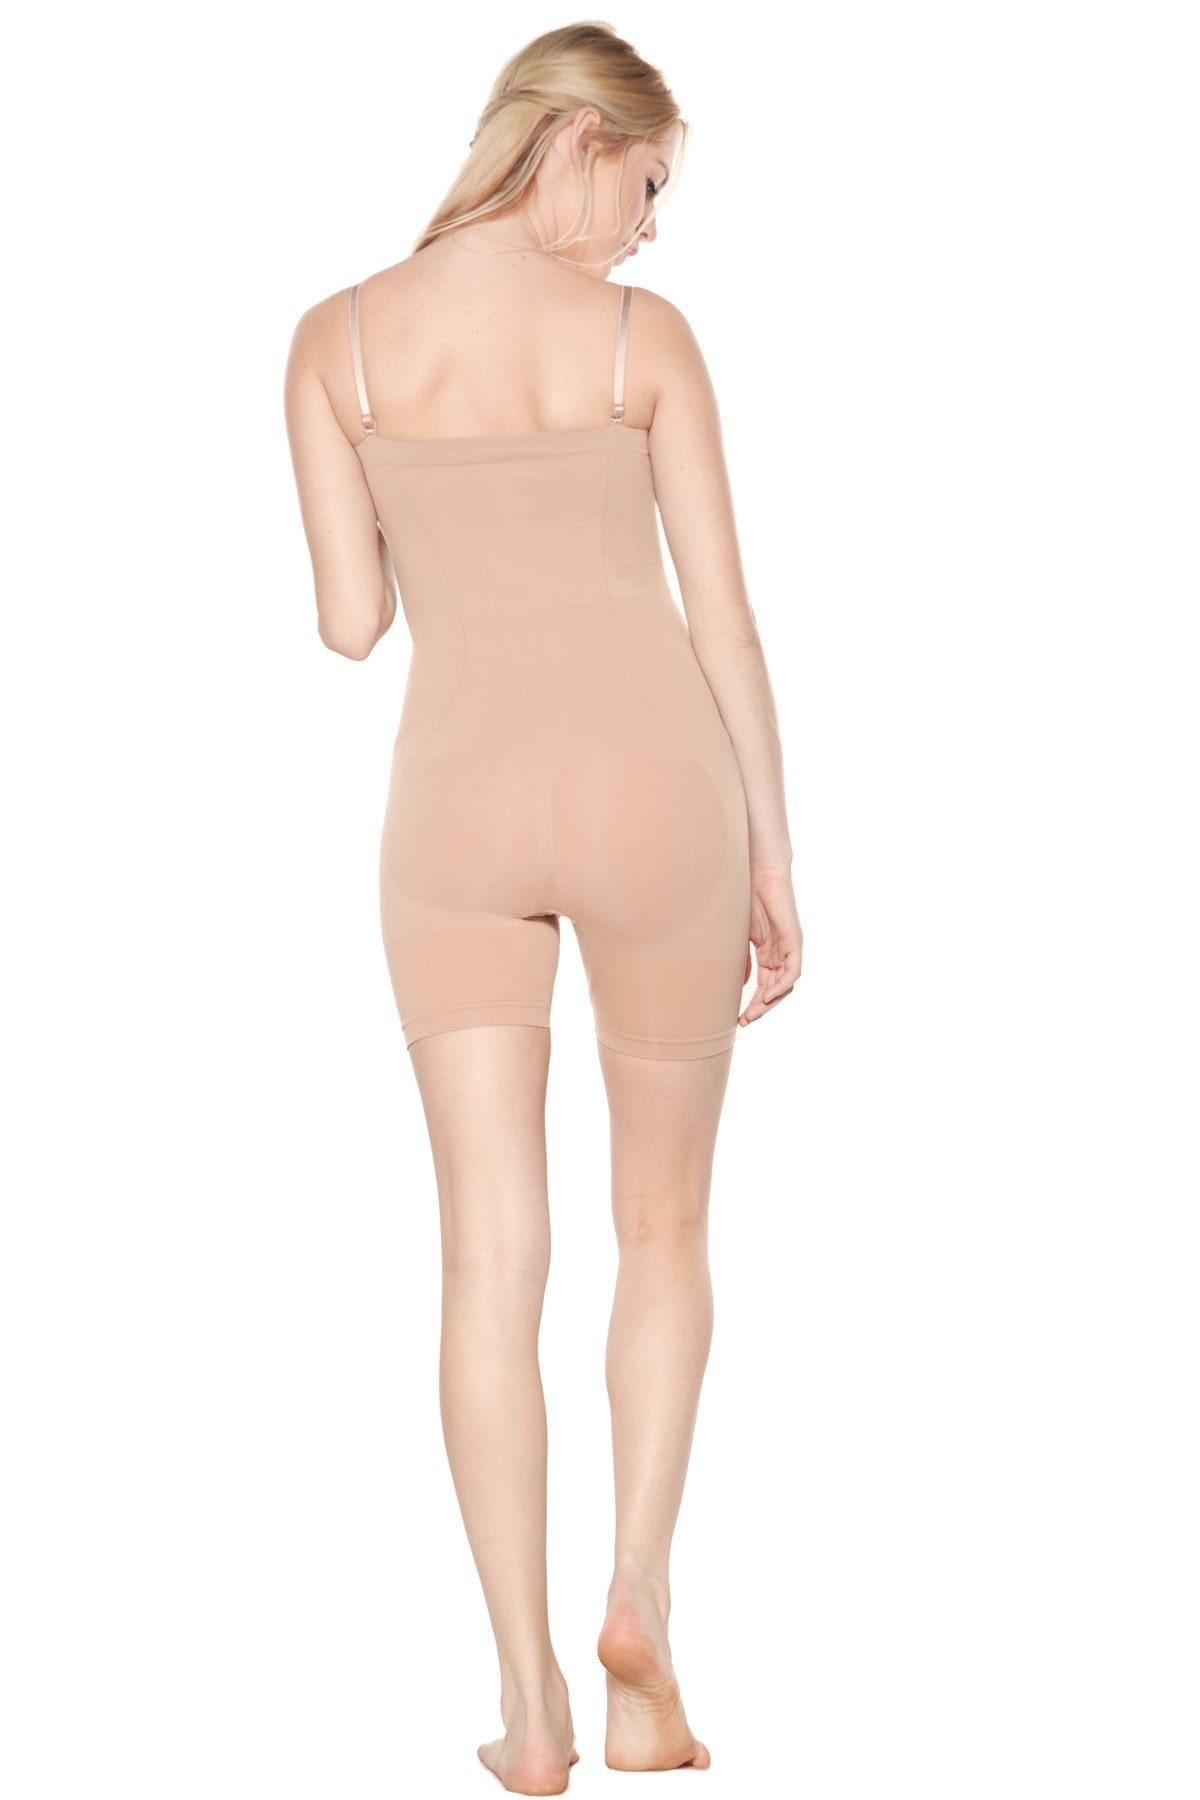 Rhonda Shear Nude Wear Your Own Bra Bodysuit Shaper Shape-wear SzM